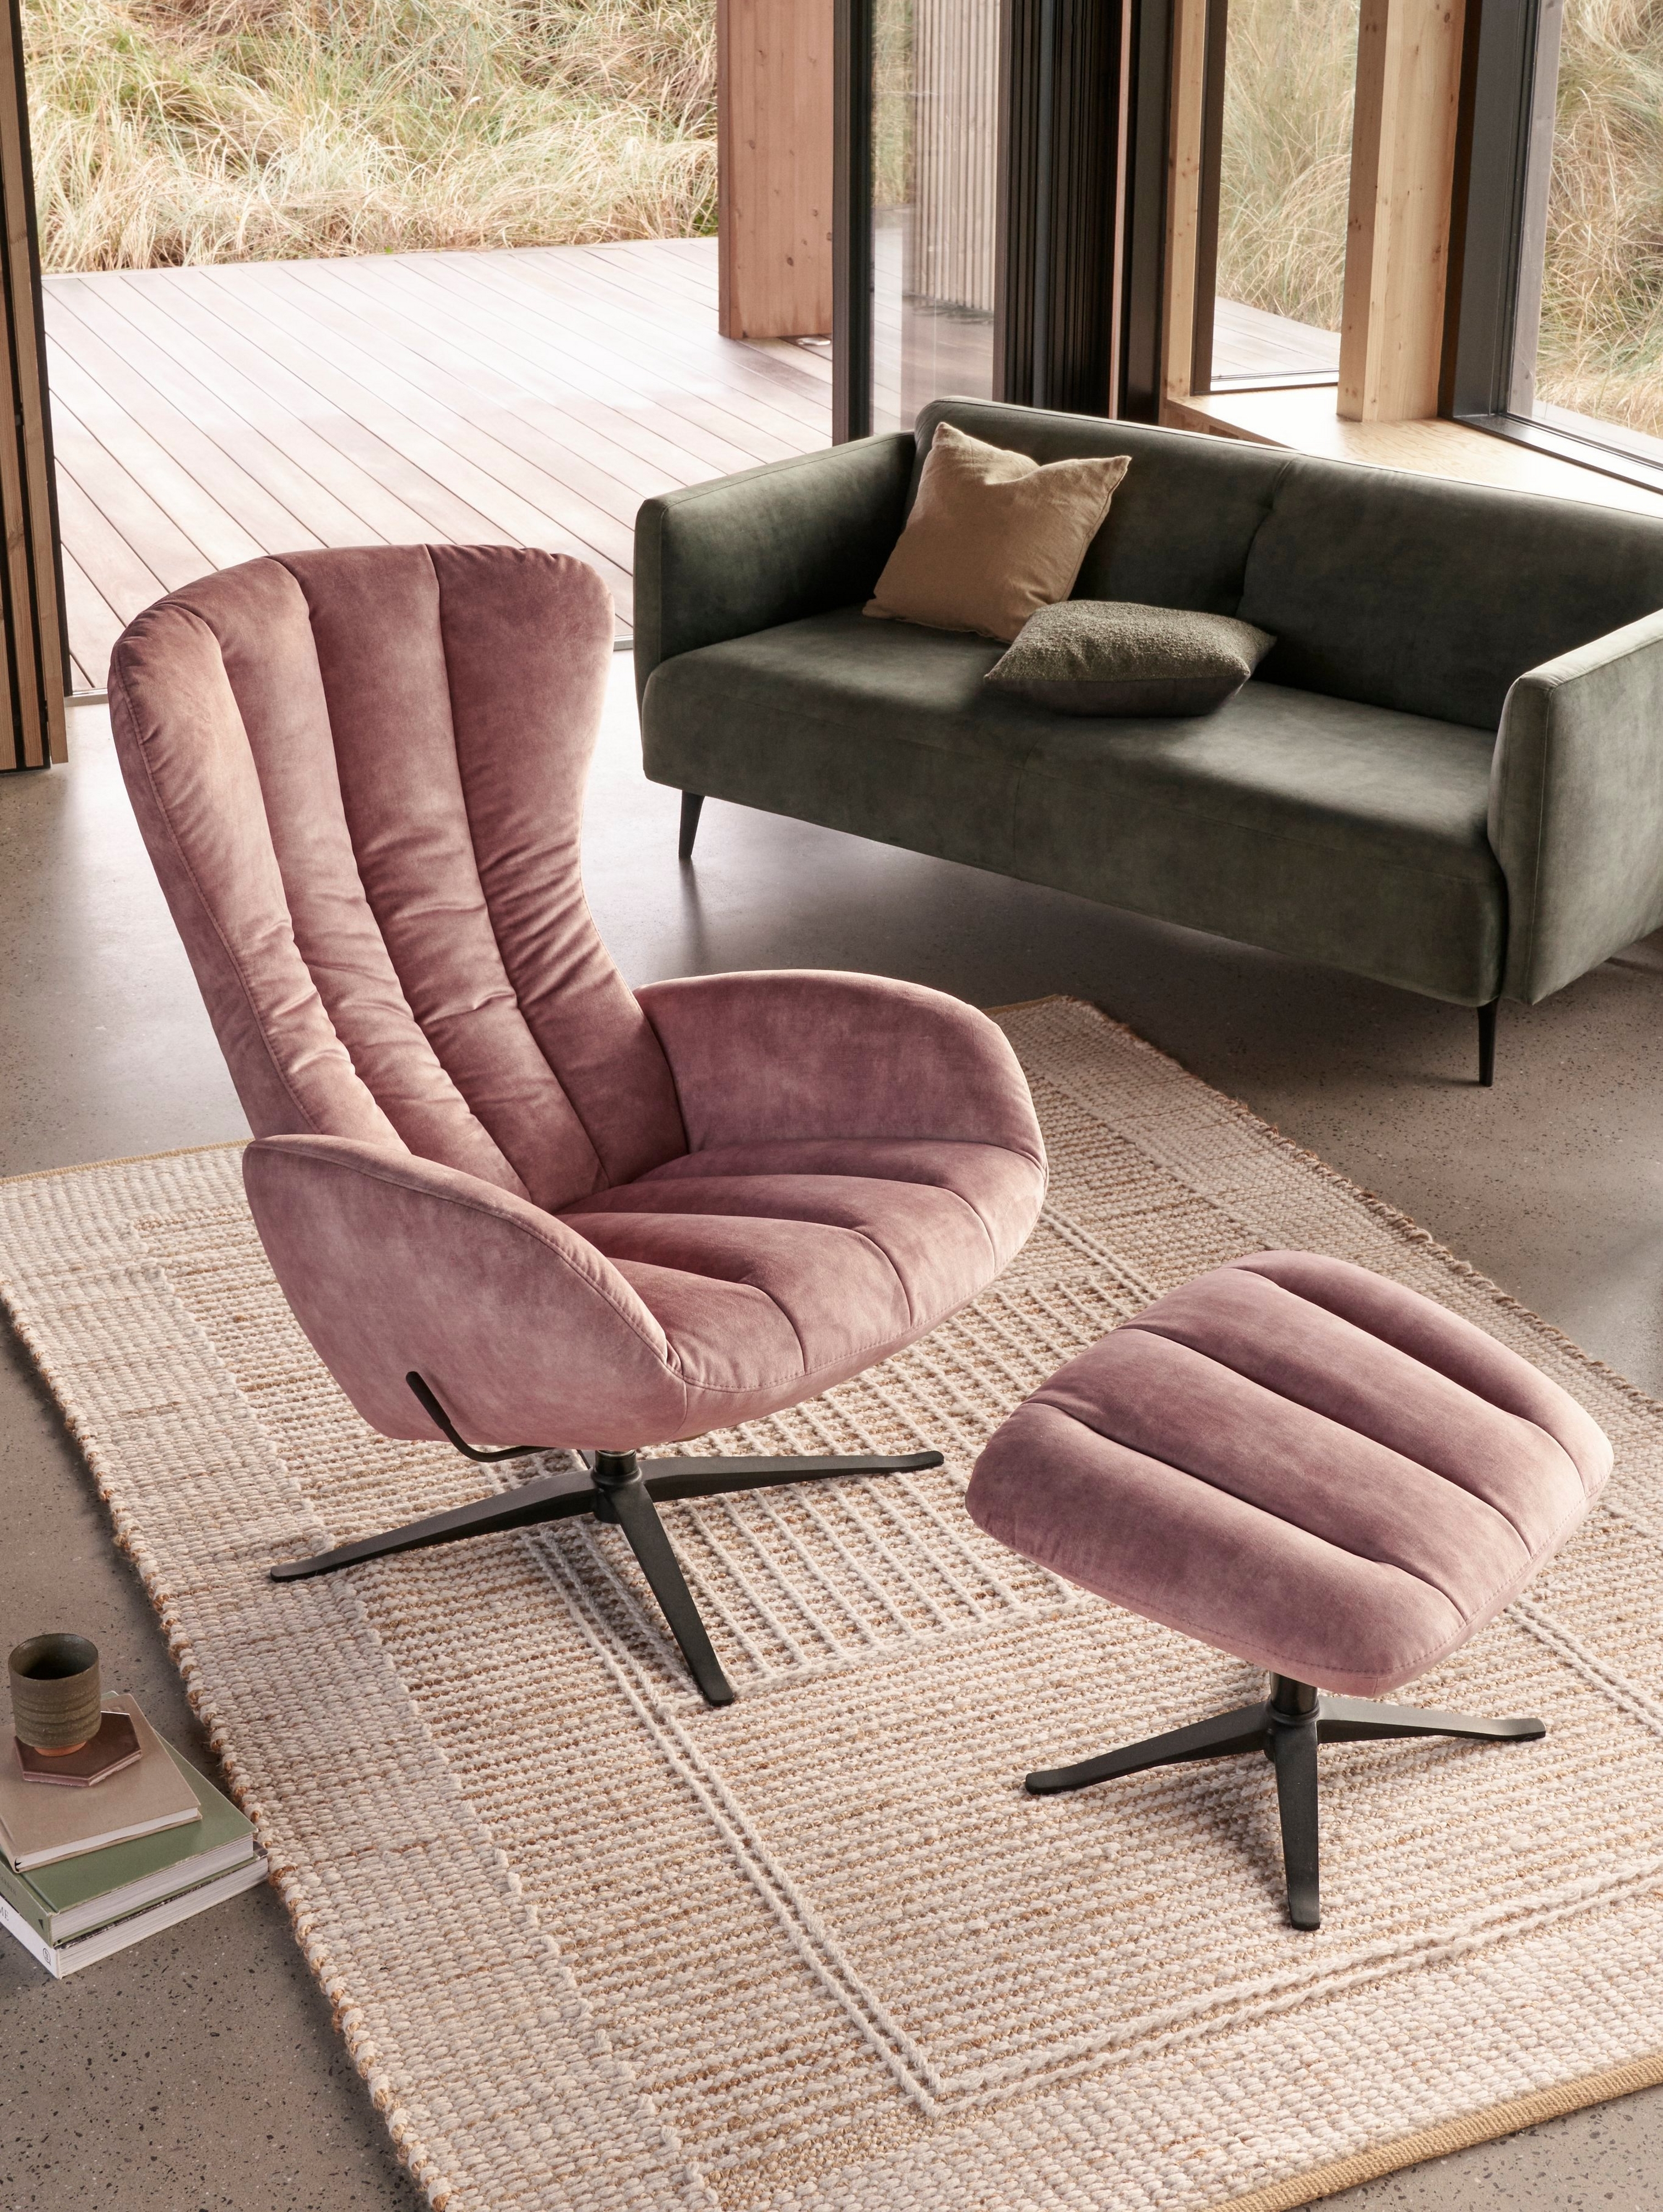 Salon lumineux avec le fauteuil Tilburg et son repose-pieds assorti en tissu Ravello rose poudré.